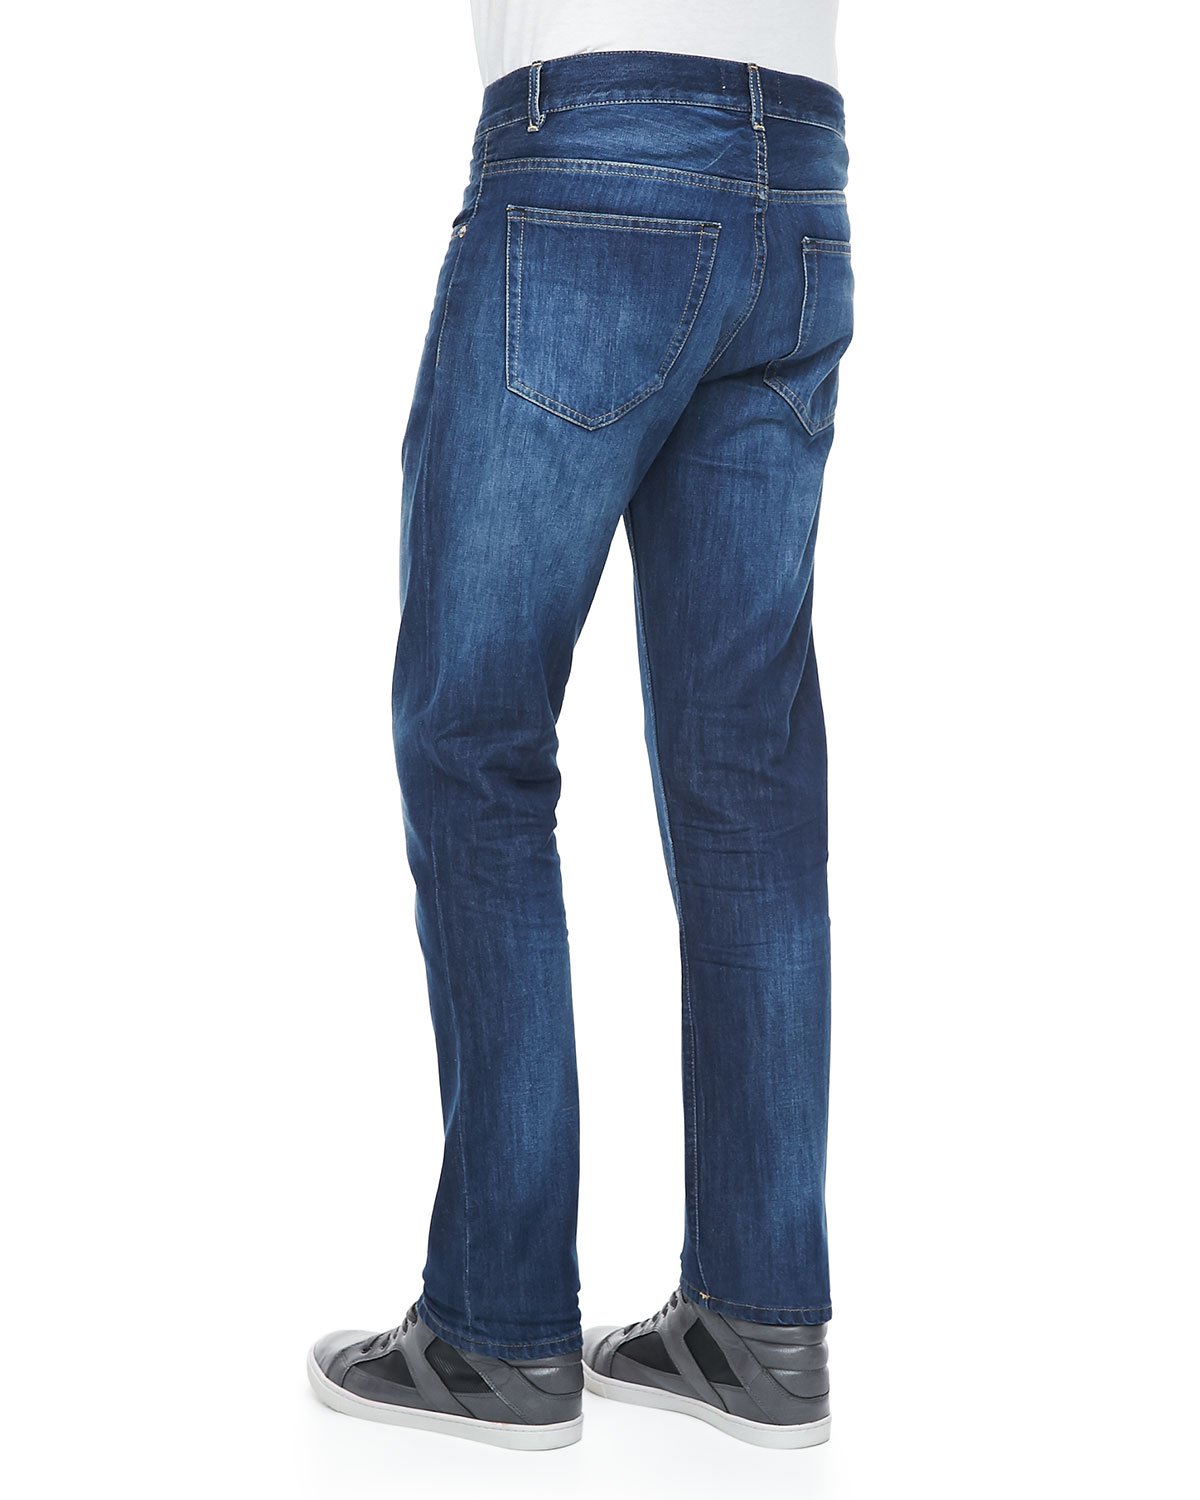 Acne Studios Roc Verakai Slim Fit Jeans in Blue for Men - Lyst